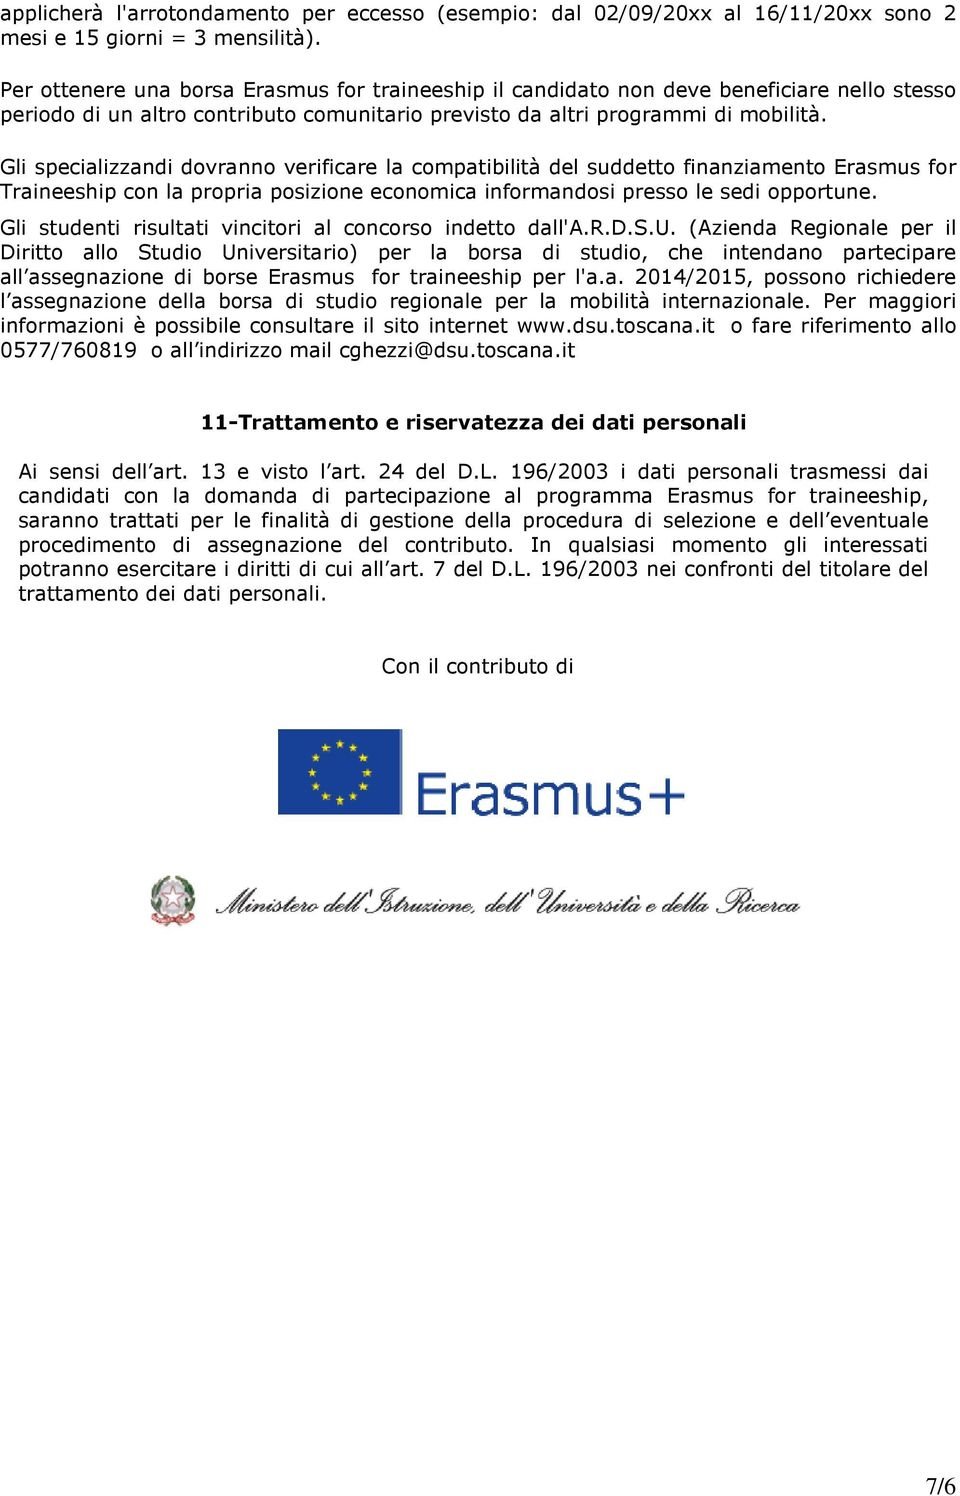 Gli specializzandi dovranno verificare la compatibilità del suddetto finanziamento Erasmus for Traineeship con la propria posizione economica informandosi presso le sedi opportune.